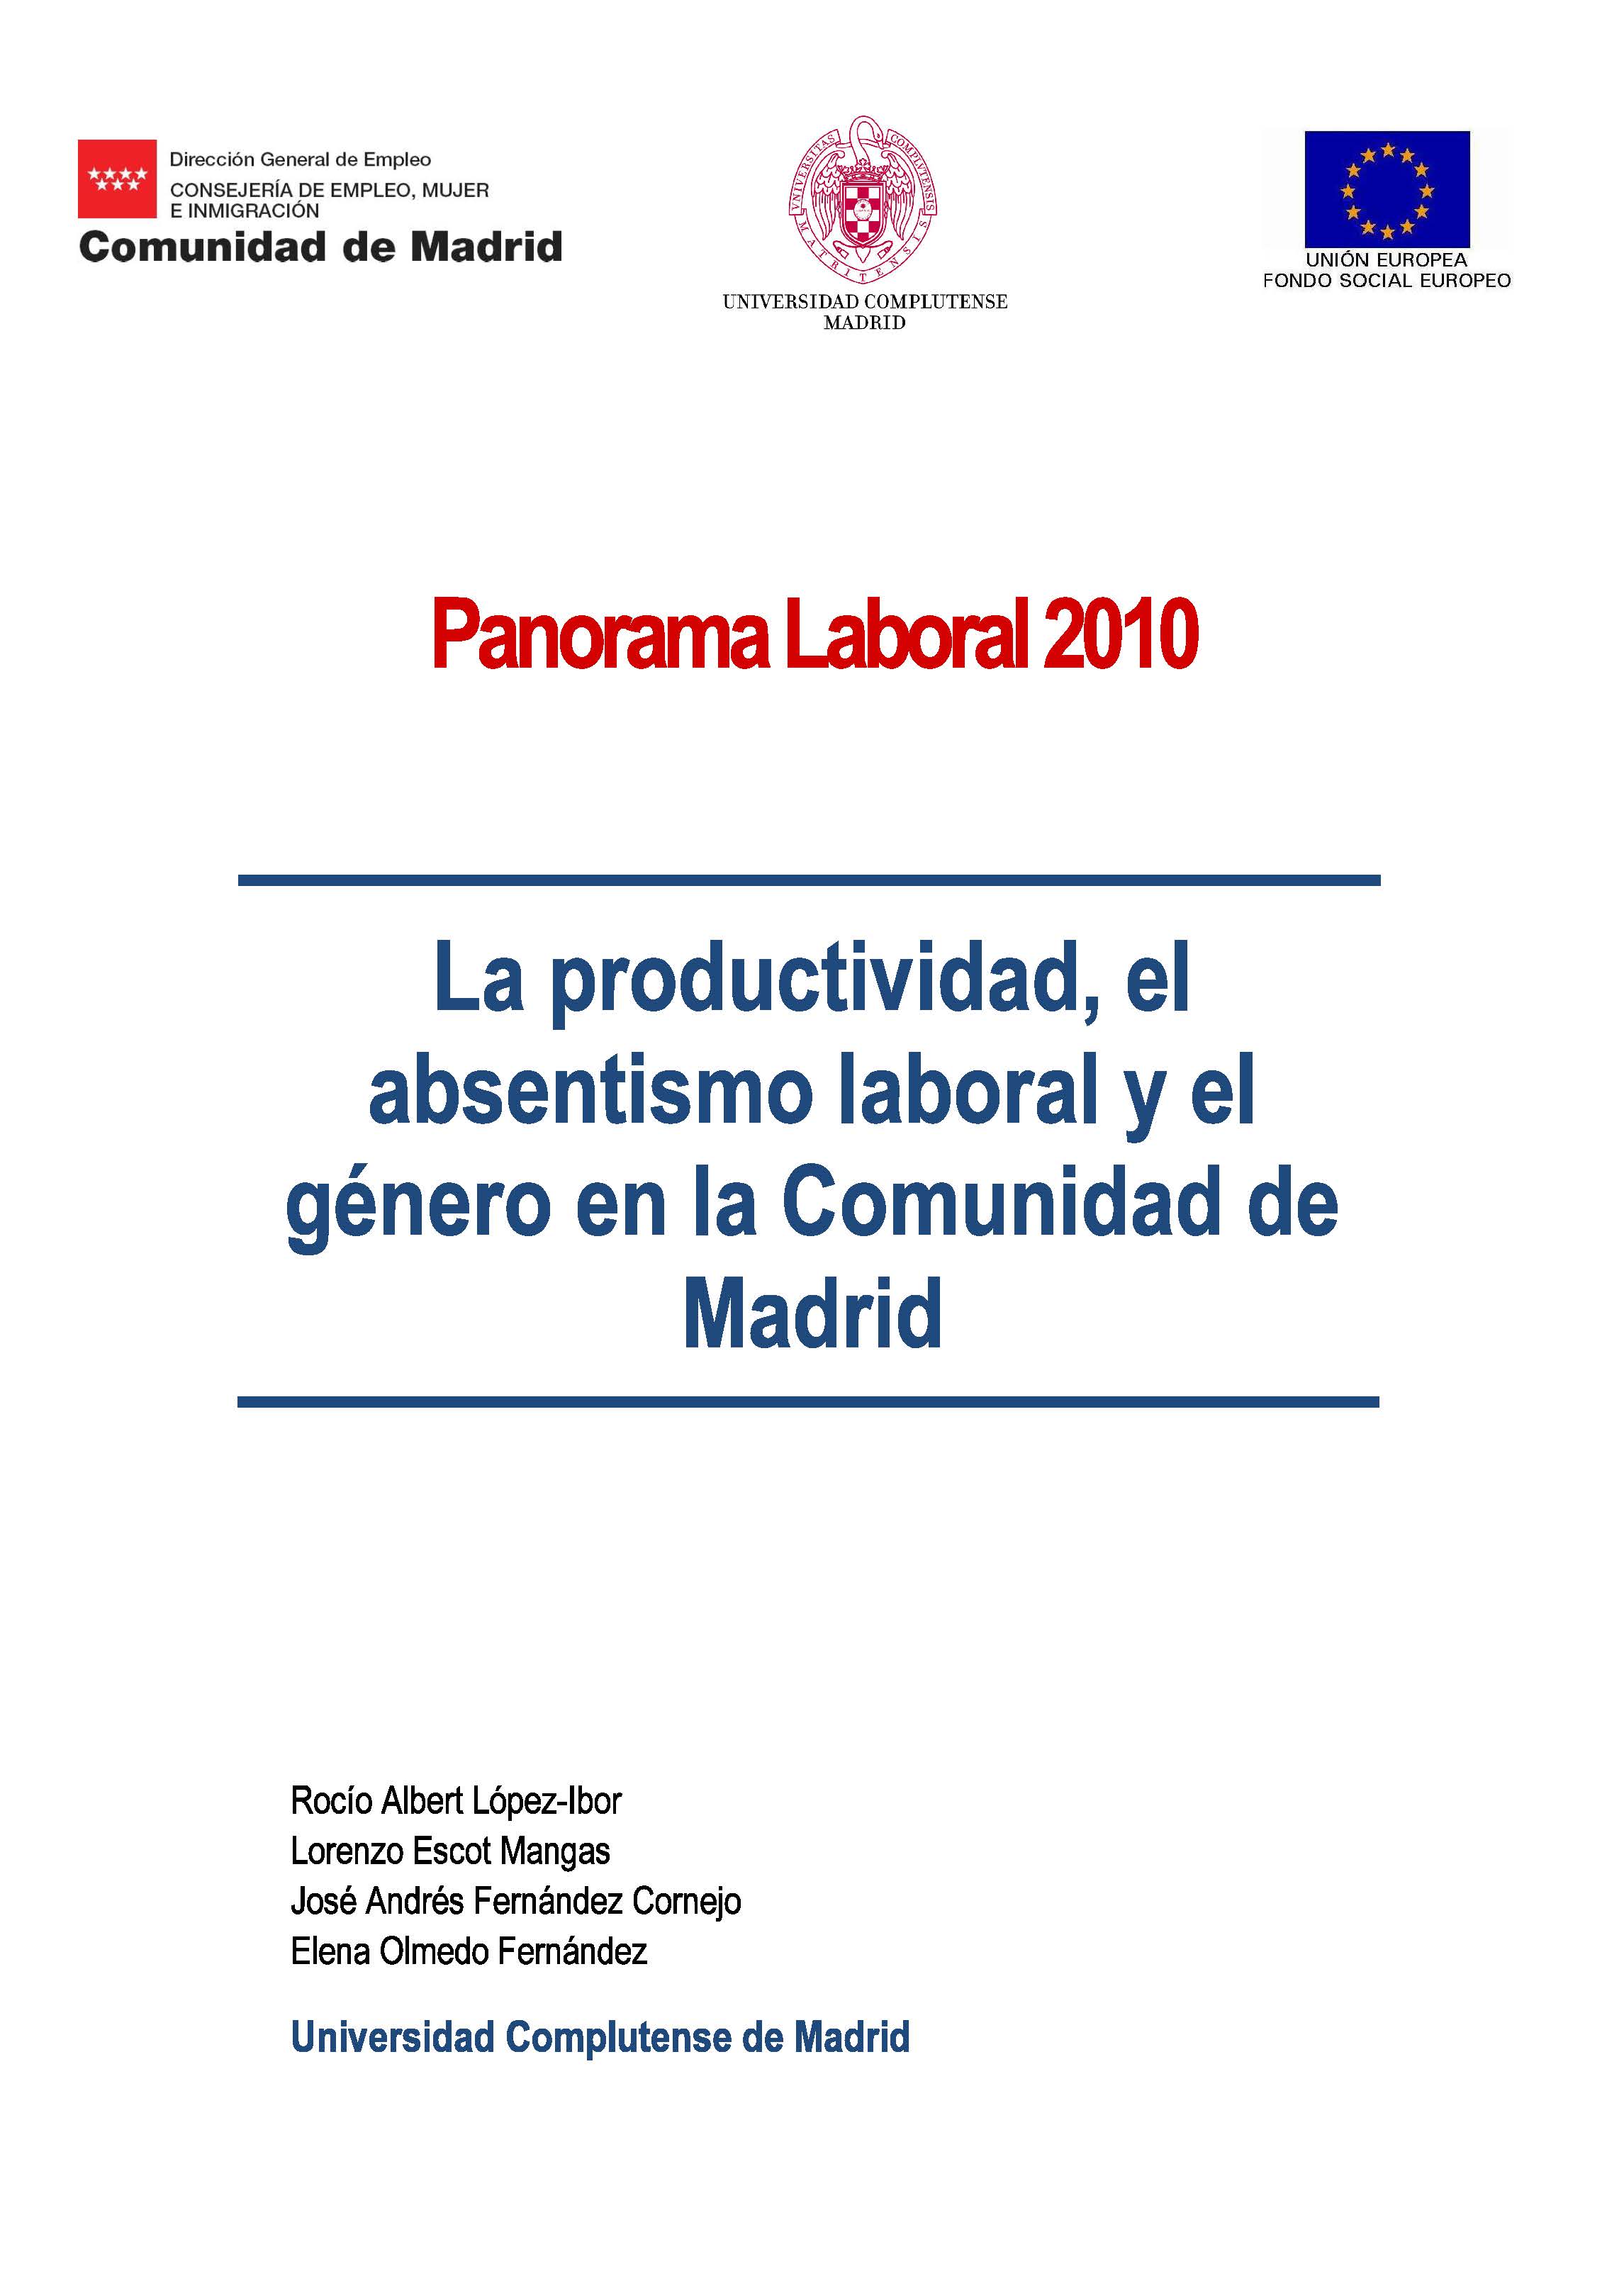 Portada de Panorama Laboral 2010. Productividad empresarial, absentismo laboral y género en la Comunidad de Madrid, La